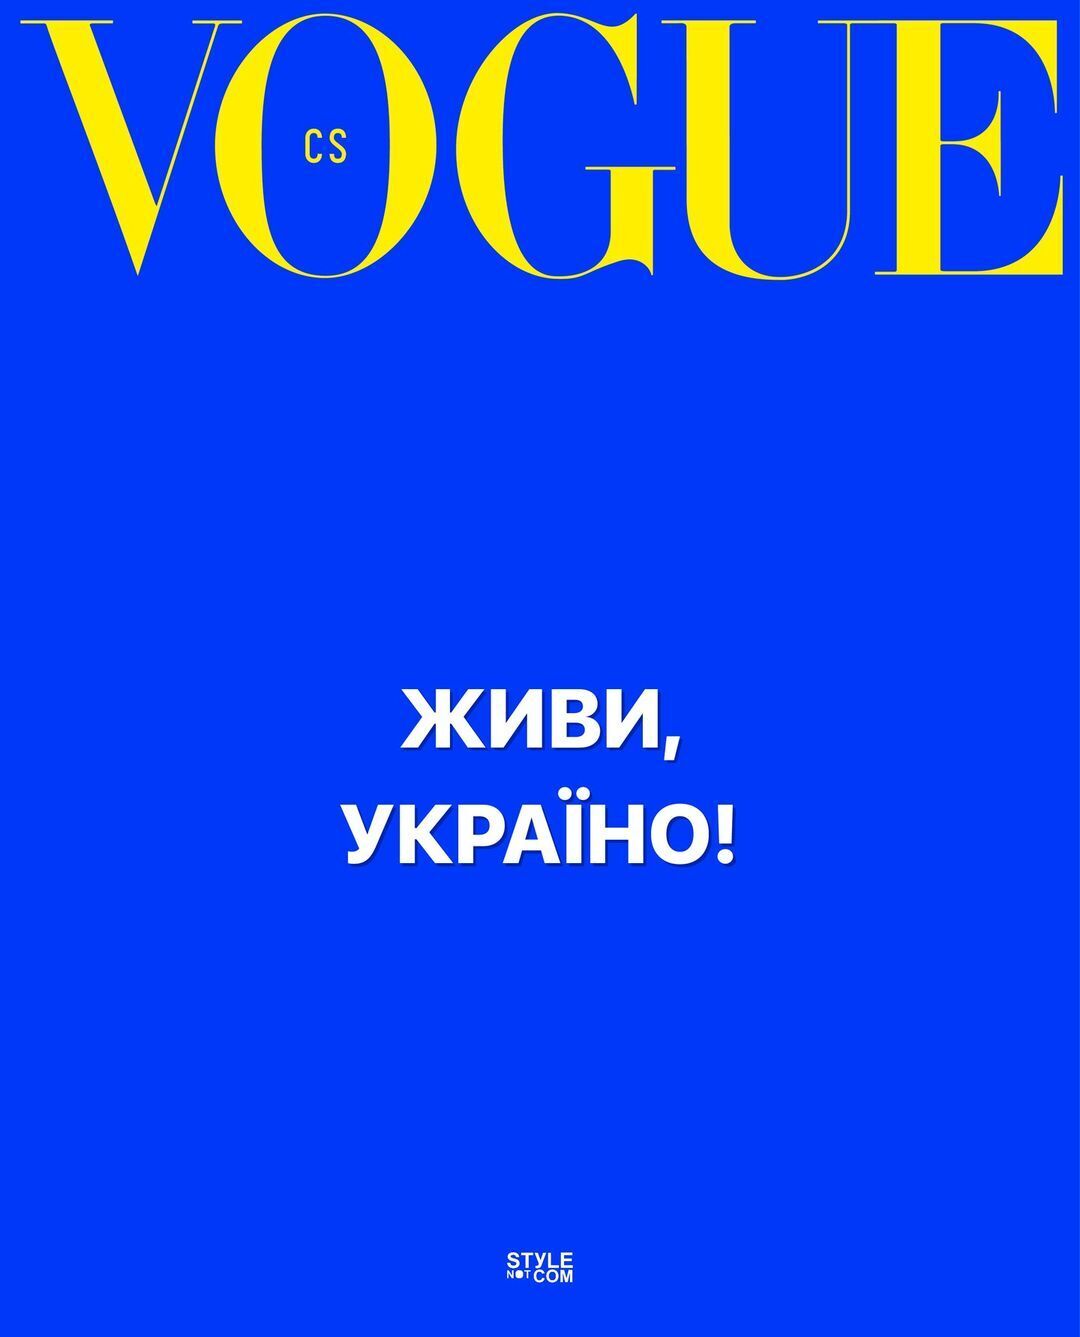 Vogue Czechoslovakia выразил солидарность украинскому народу